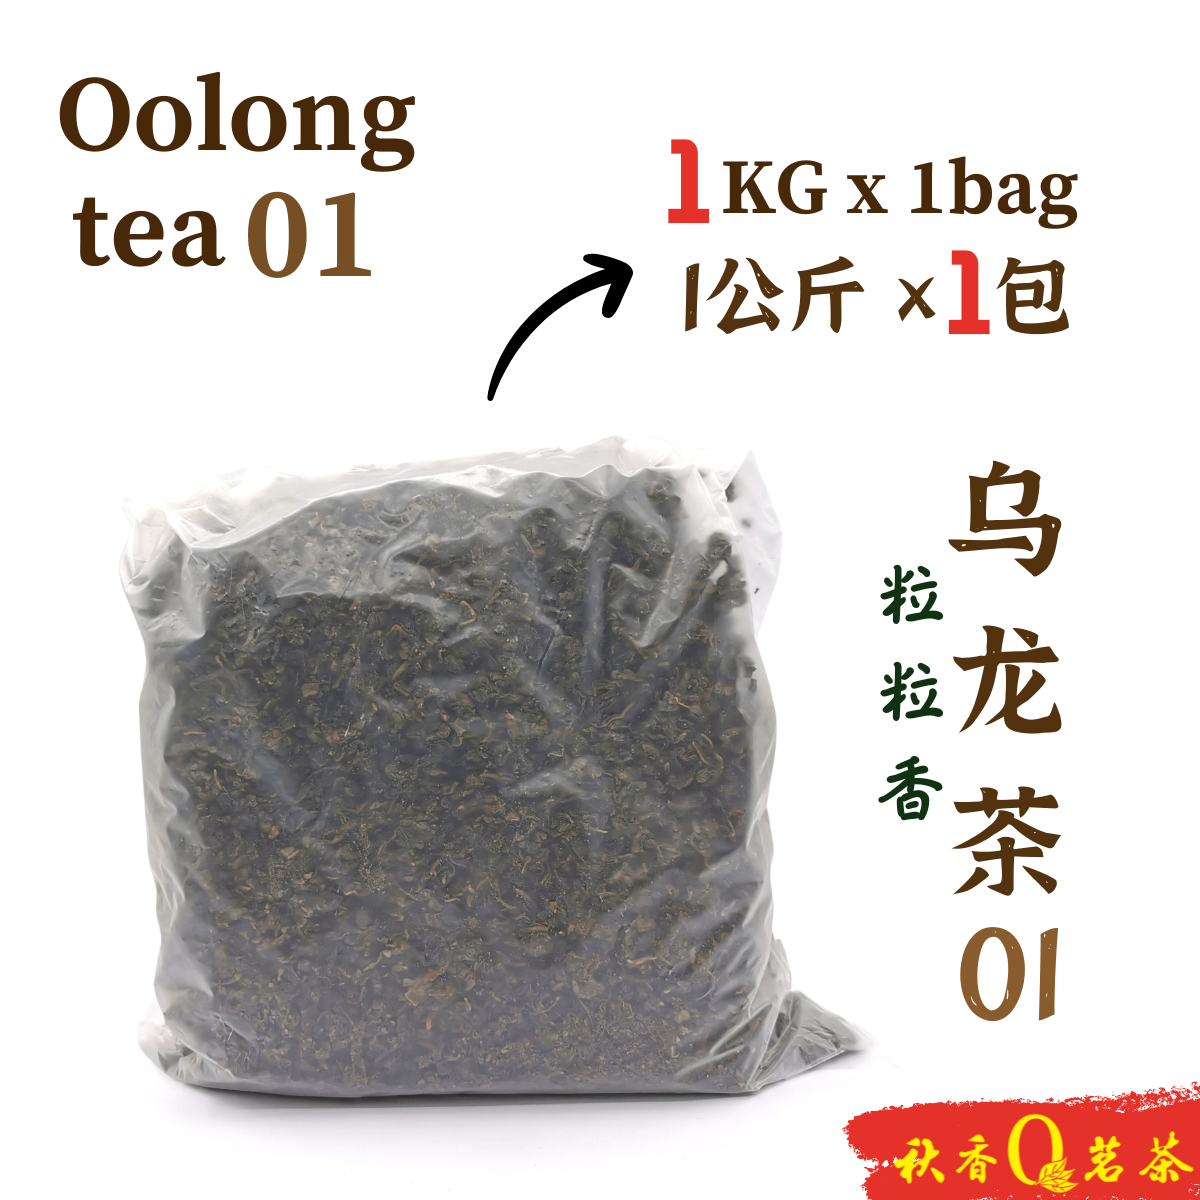 乌龙茶 01 Oolong Tea 01 (粒粒香 Li Li Xiang tea)【1kg】